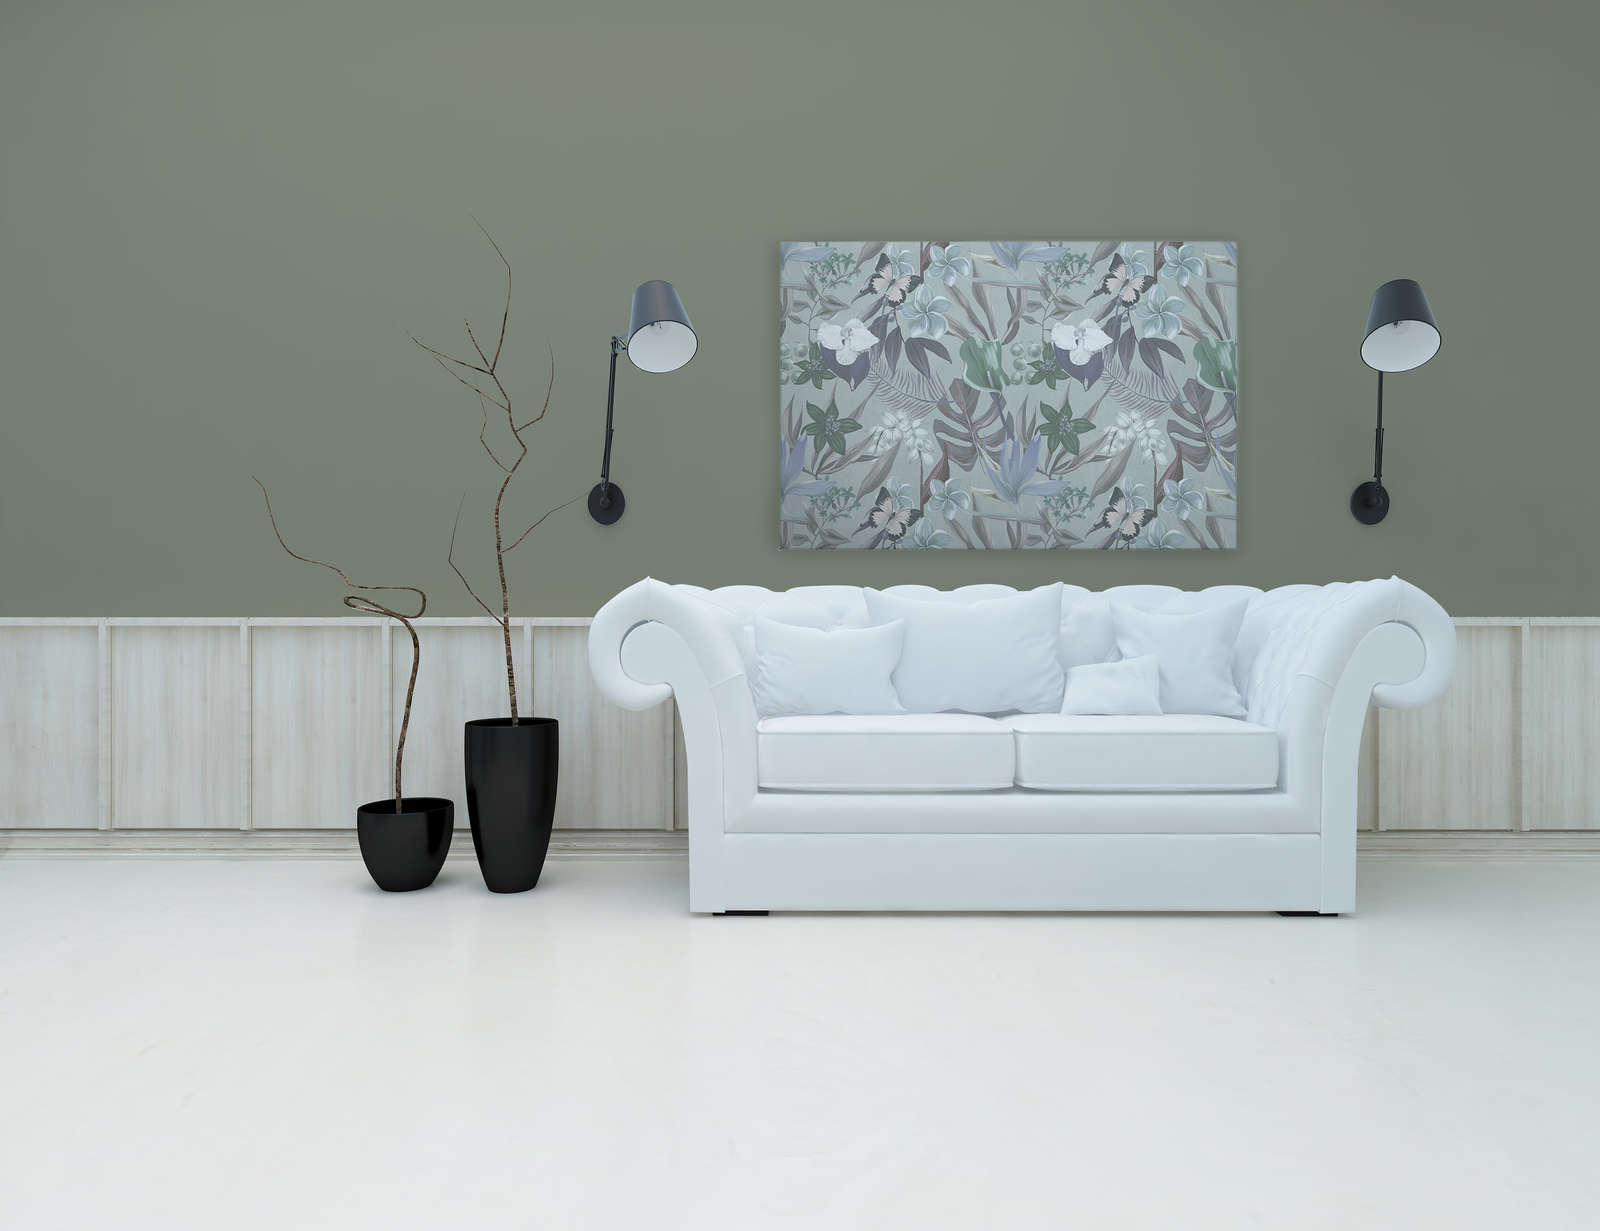             Jungle florale dessinée sur toile | vert, blanc - 1,20 m x 0,80 m
        